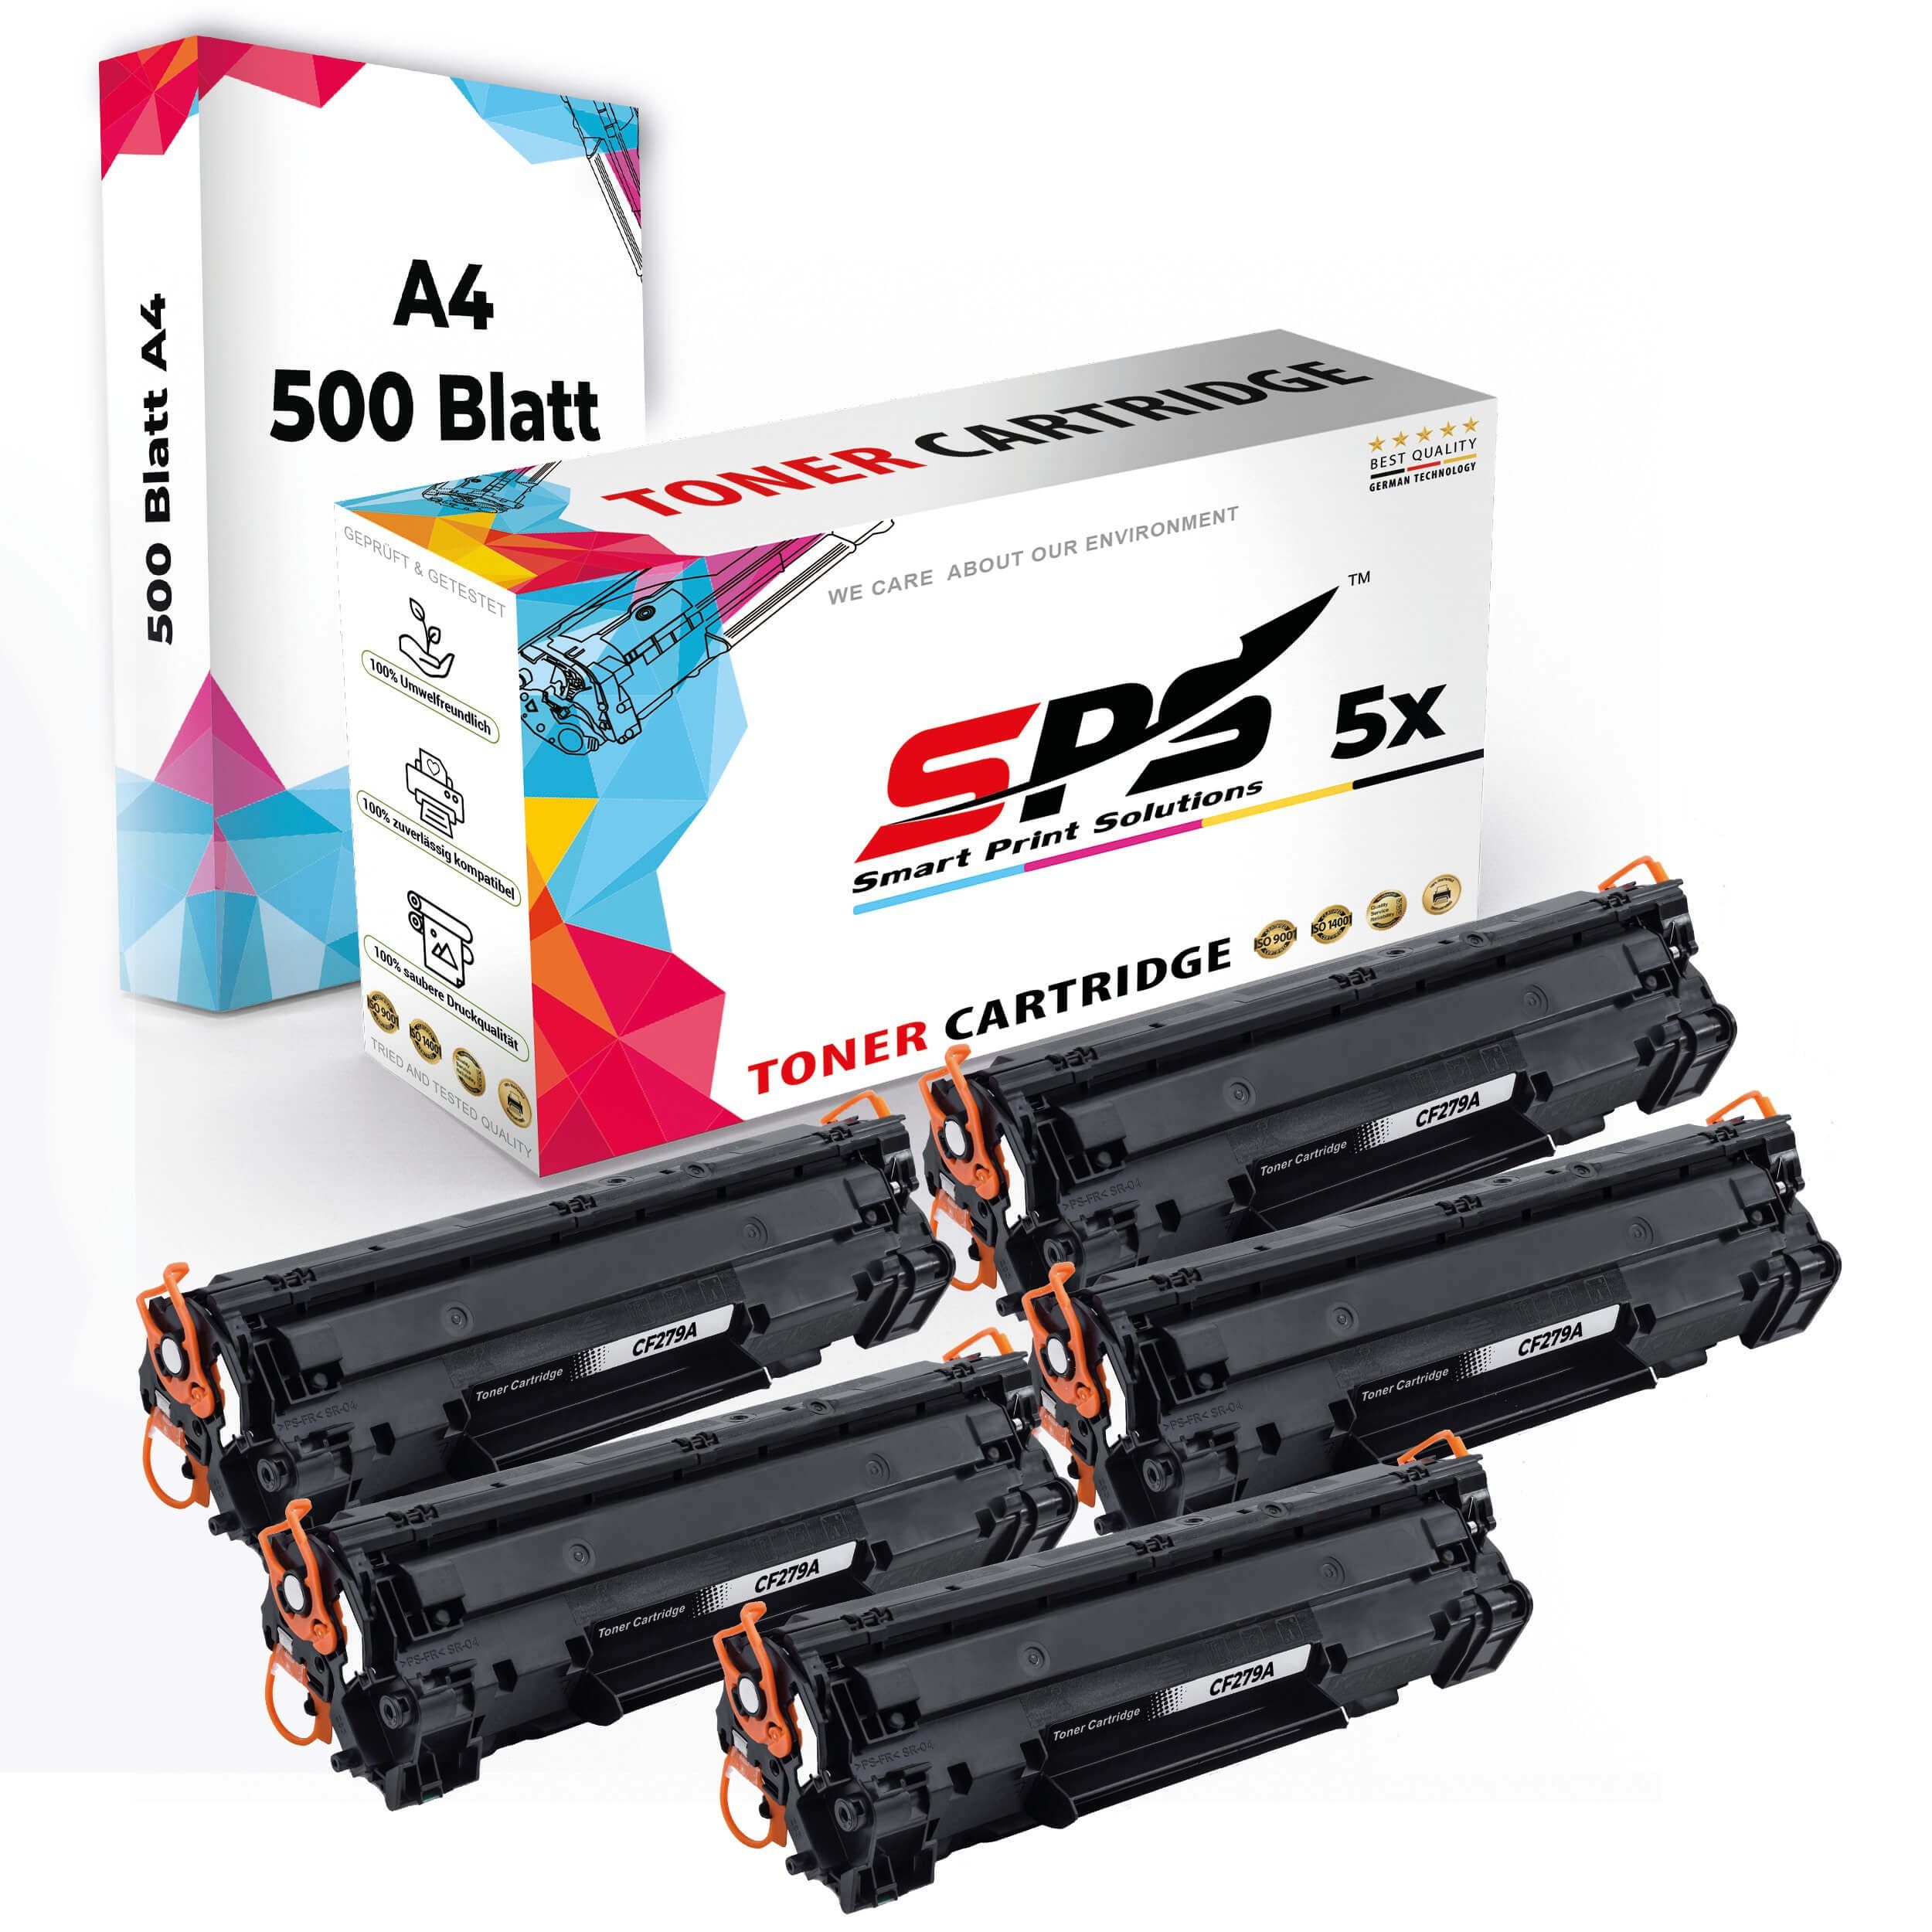 A4 5x Pack, SPS (5er 5x + Druckerpapier) Druckerpapier Set Tonerkartusche Kompatibel, A4 Toner,1x Multipack